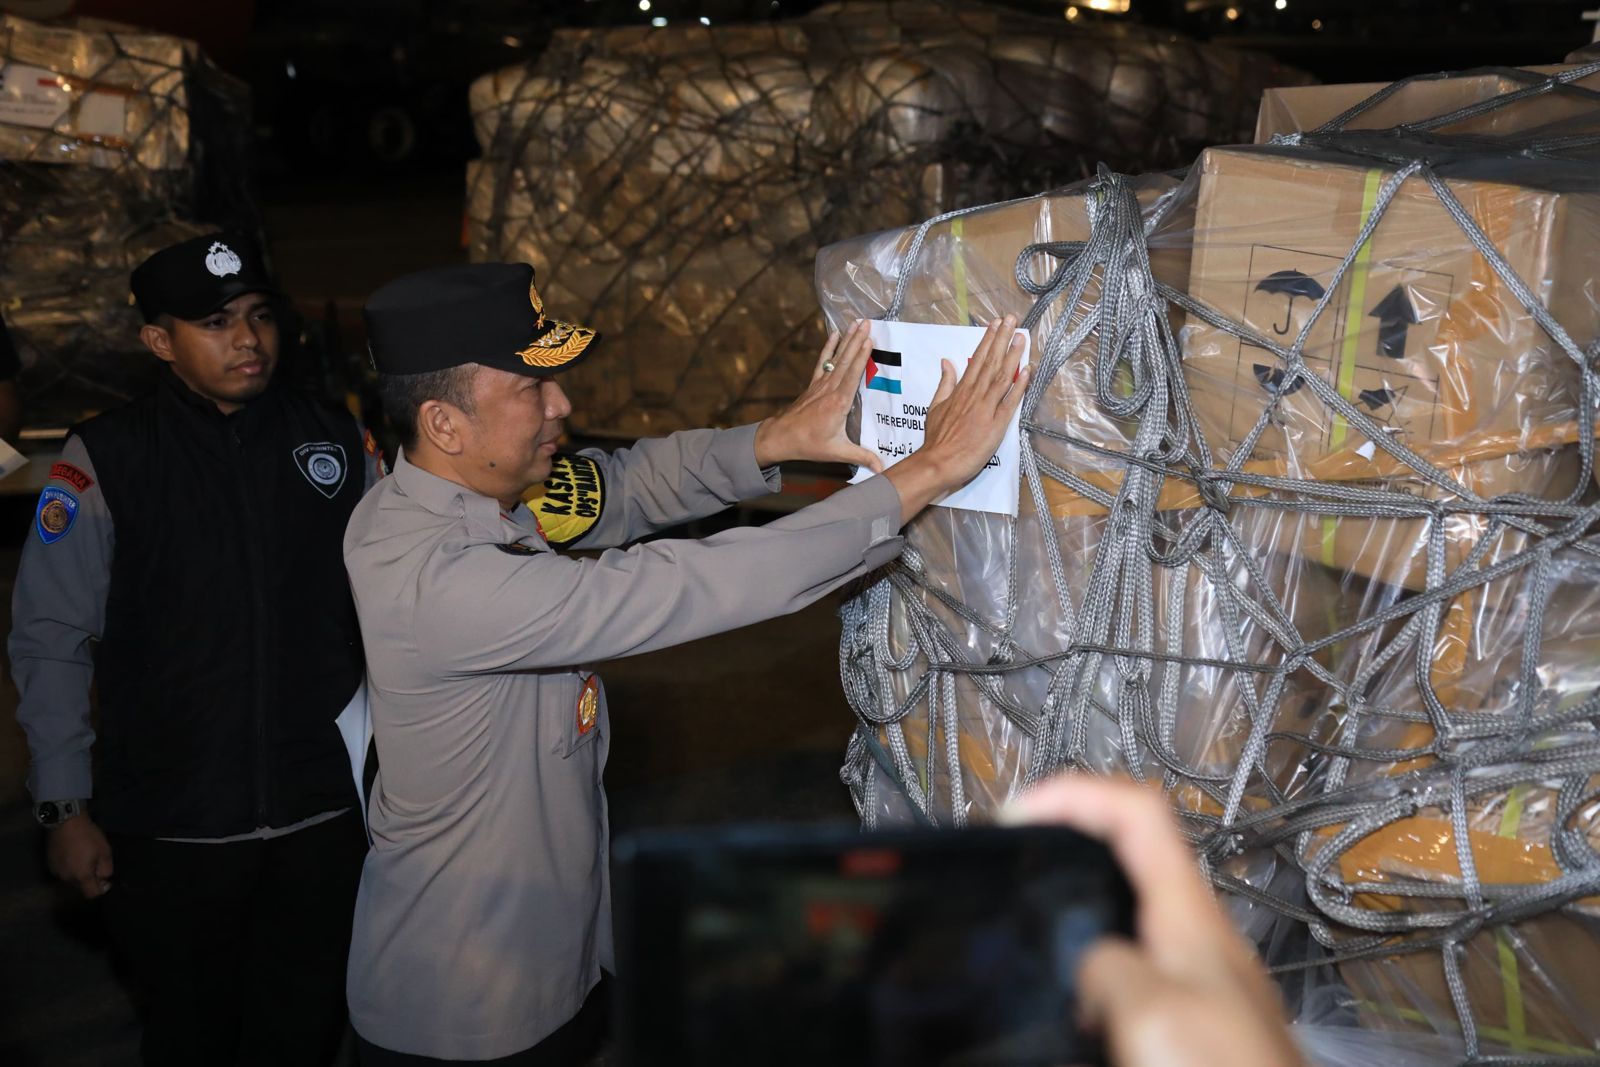 Bantuan kemanusiaan pemerintah Indonesia untuk Palestina kembali diterbangkan via Bandara El Aris, Mesir. Satu pesawat carter Lion Air A 330 diberangkatkan untuk membawa bantuan kemanusiaan bagi masyarakat Palestina.